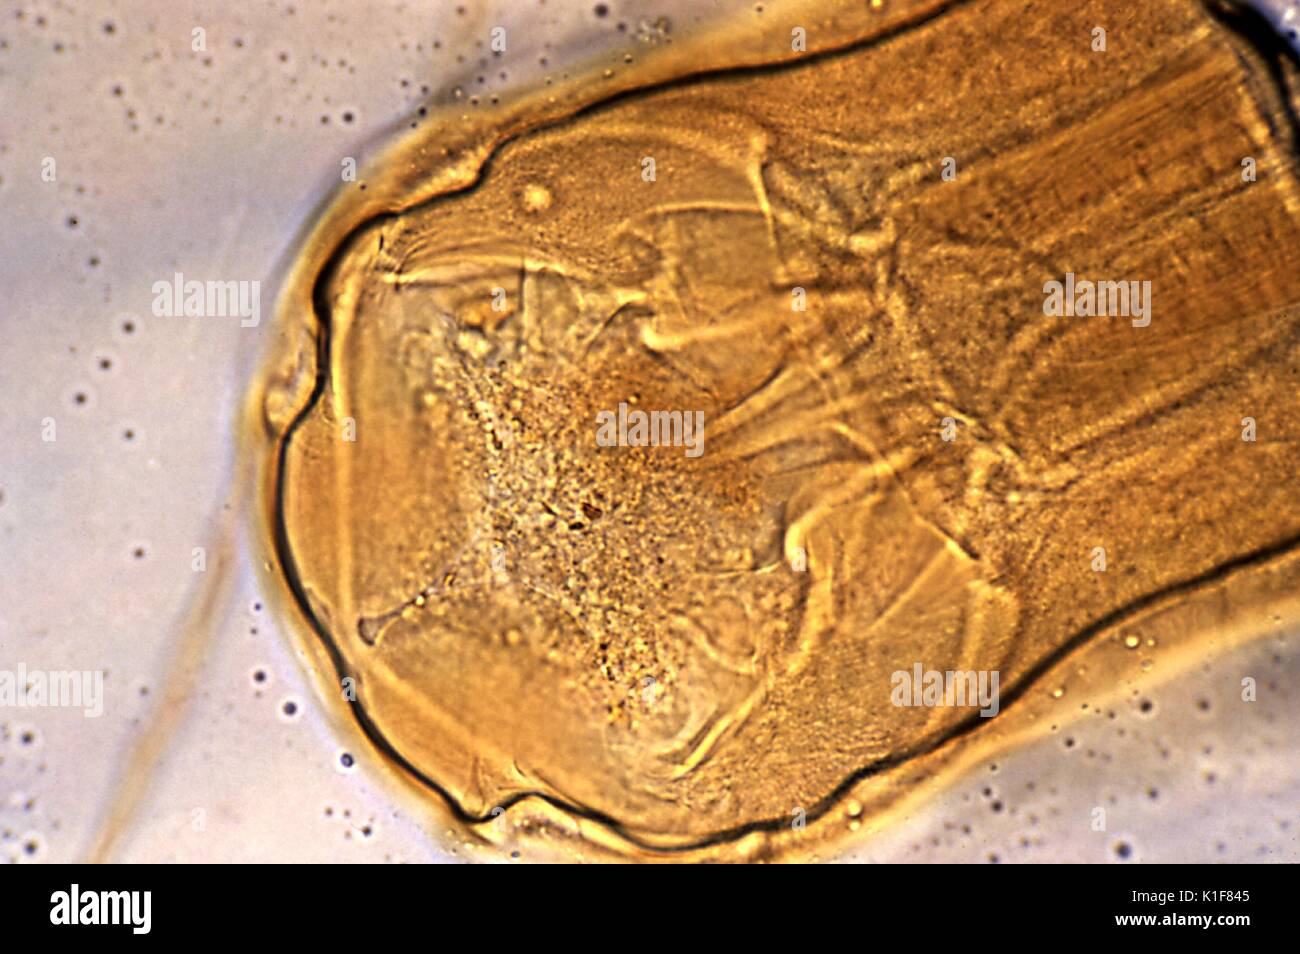 Tale micrografia rivela la testa del hookworm Necator americanus, e la sua bocca?s piatti di taglio, Mag. 400X. Il hookworm utilizza tali spigoli denti di taglio per afferrare saldamente alla parete intestinale, e pur rimanendo fissato in posto, ingerisce l'host?s sangue, ottenendo la sua nutrients in questo modo. Immagine cortesia CDC/Dott. Mae Melvin, 1982. Foto Stock